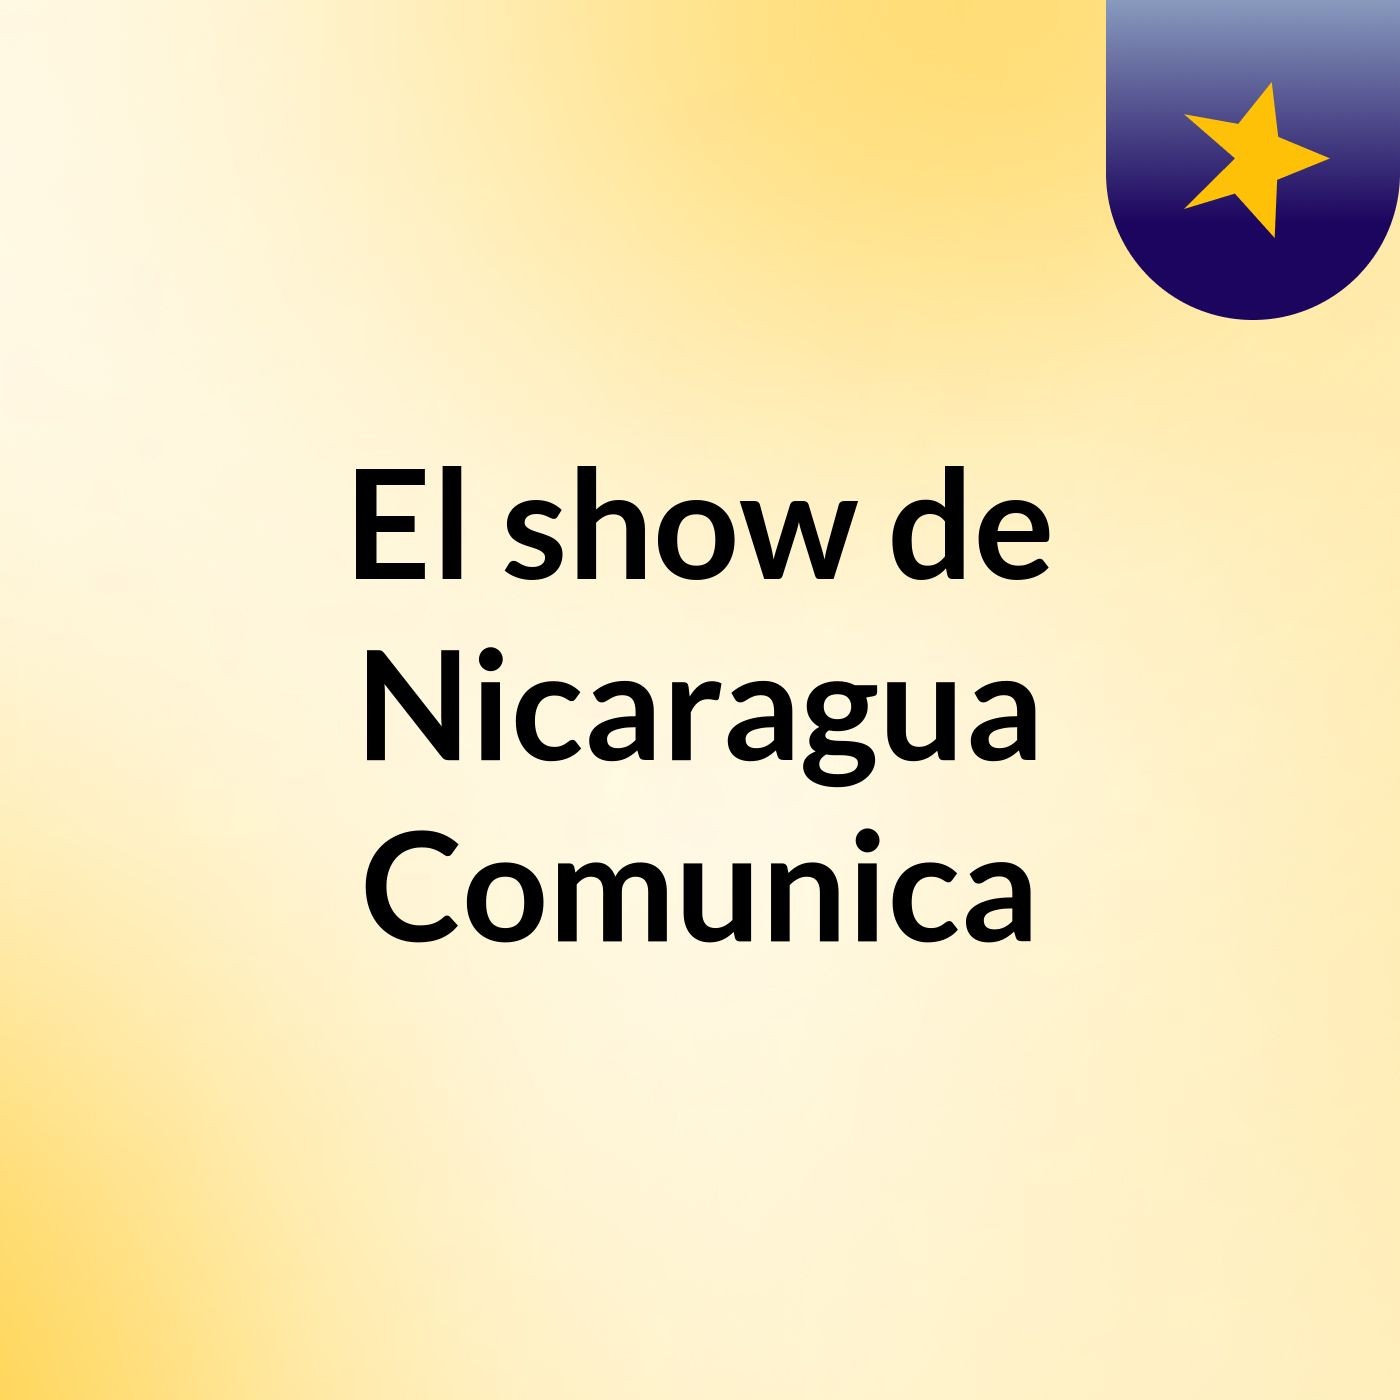 El show de Nicaragua Comunica